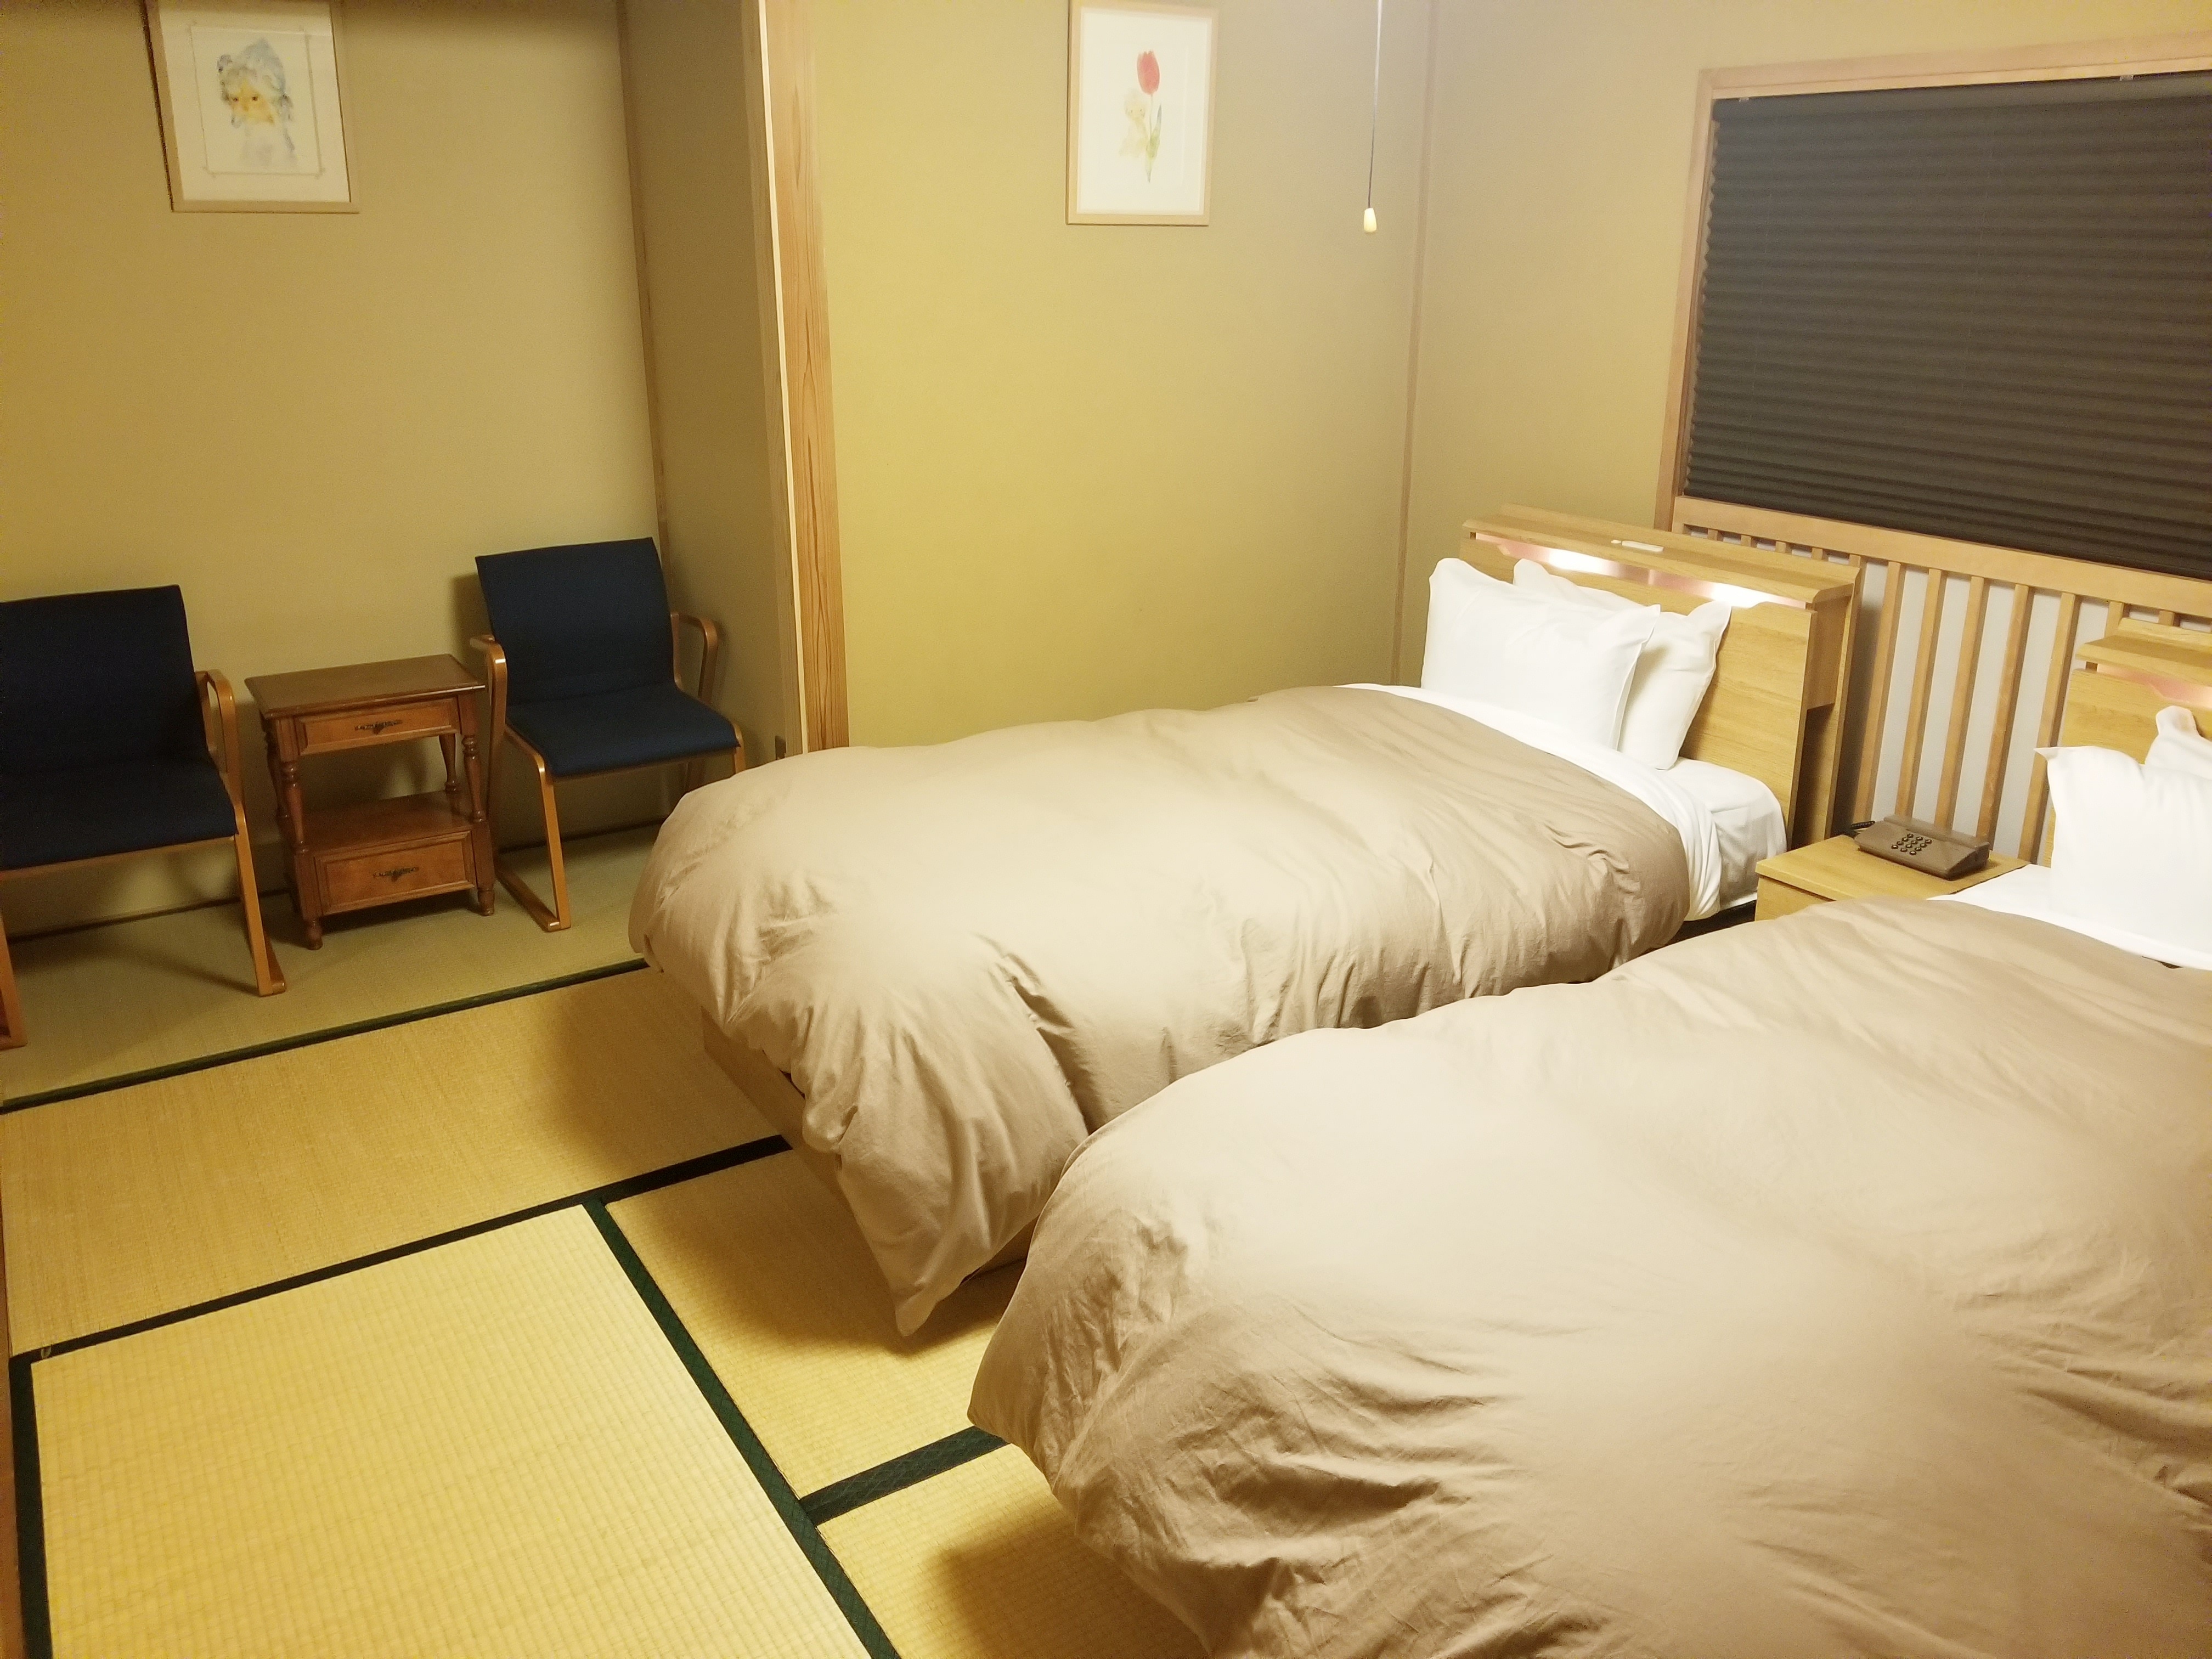 Kamar tidur di kamar khusus gedung baru